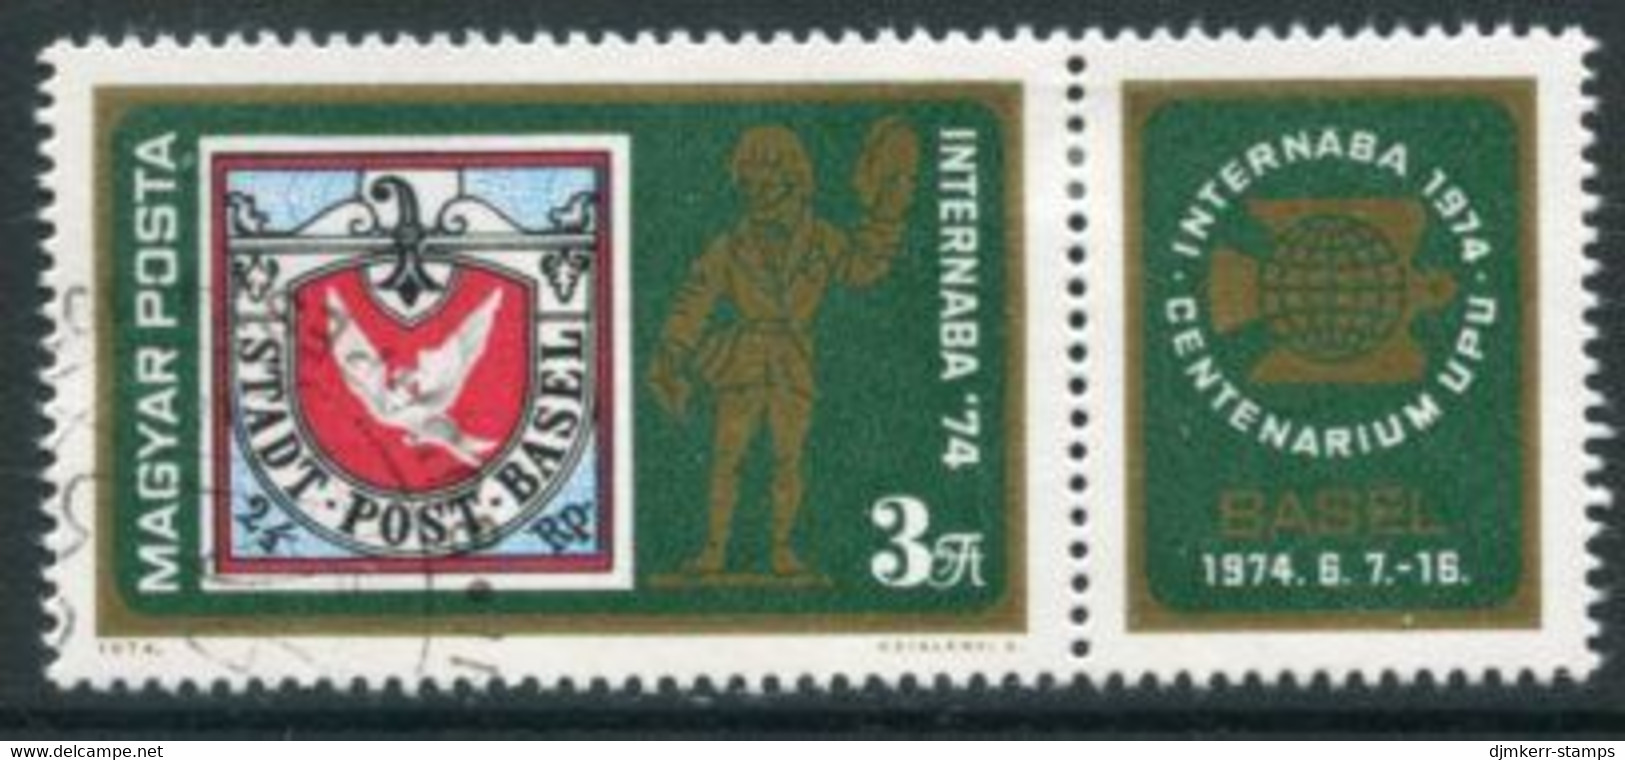 HUNGARY 1974 INTERNABA Stamp Exhibition Used.  Michel 2956 - Gebruikt